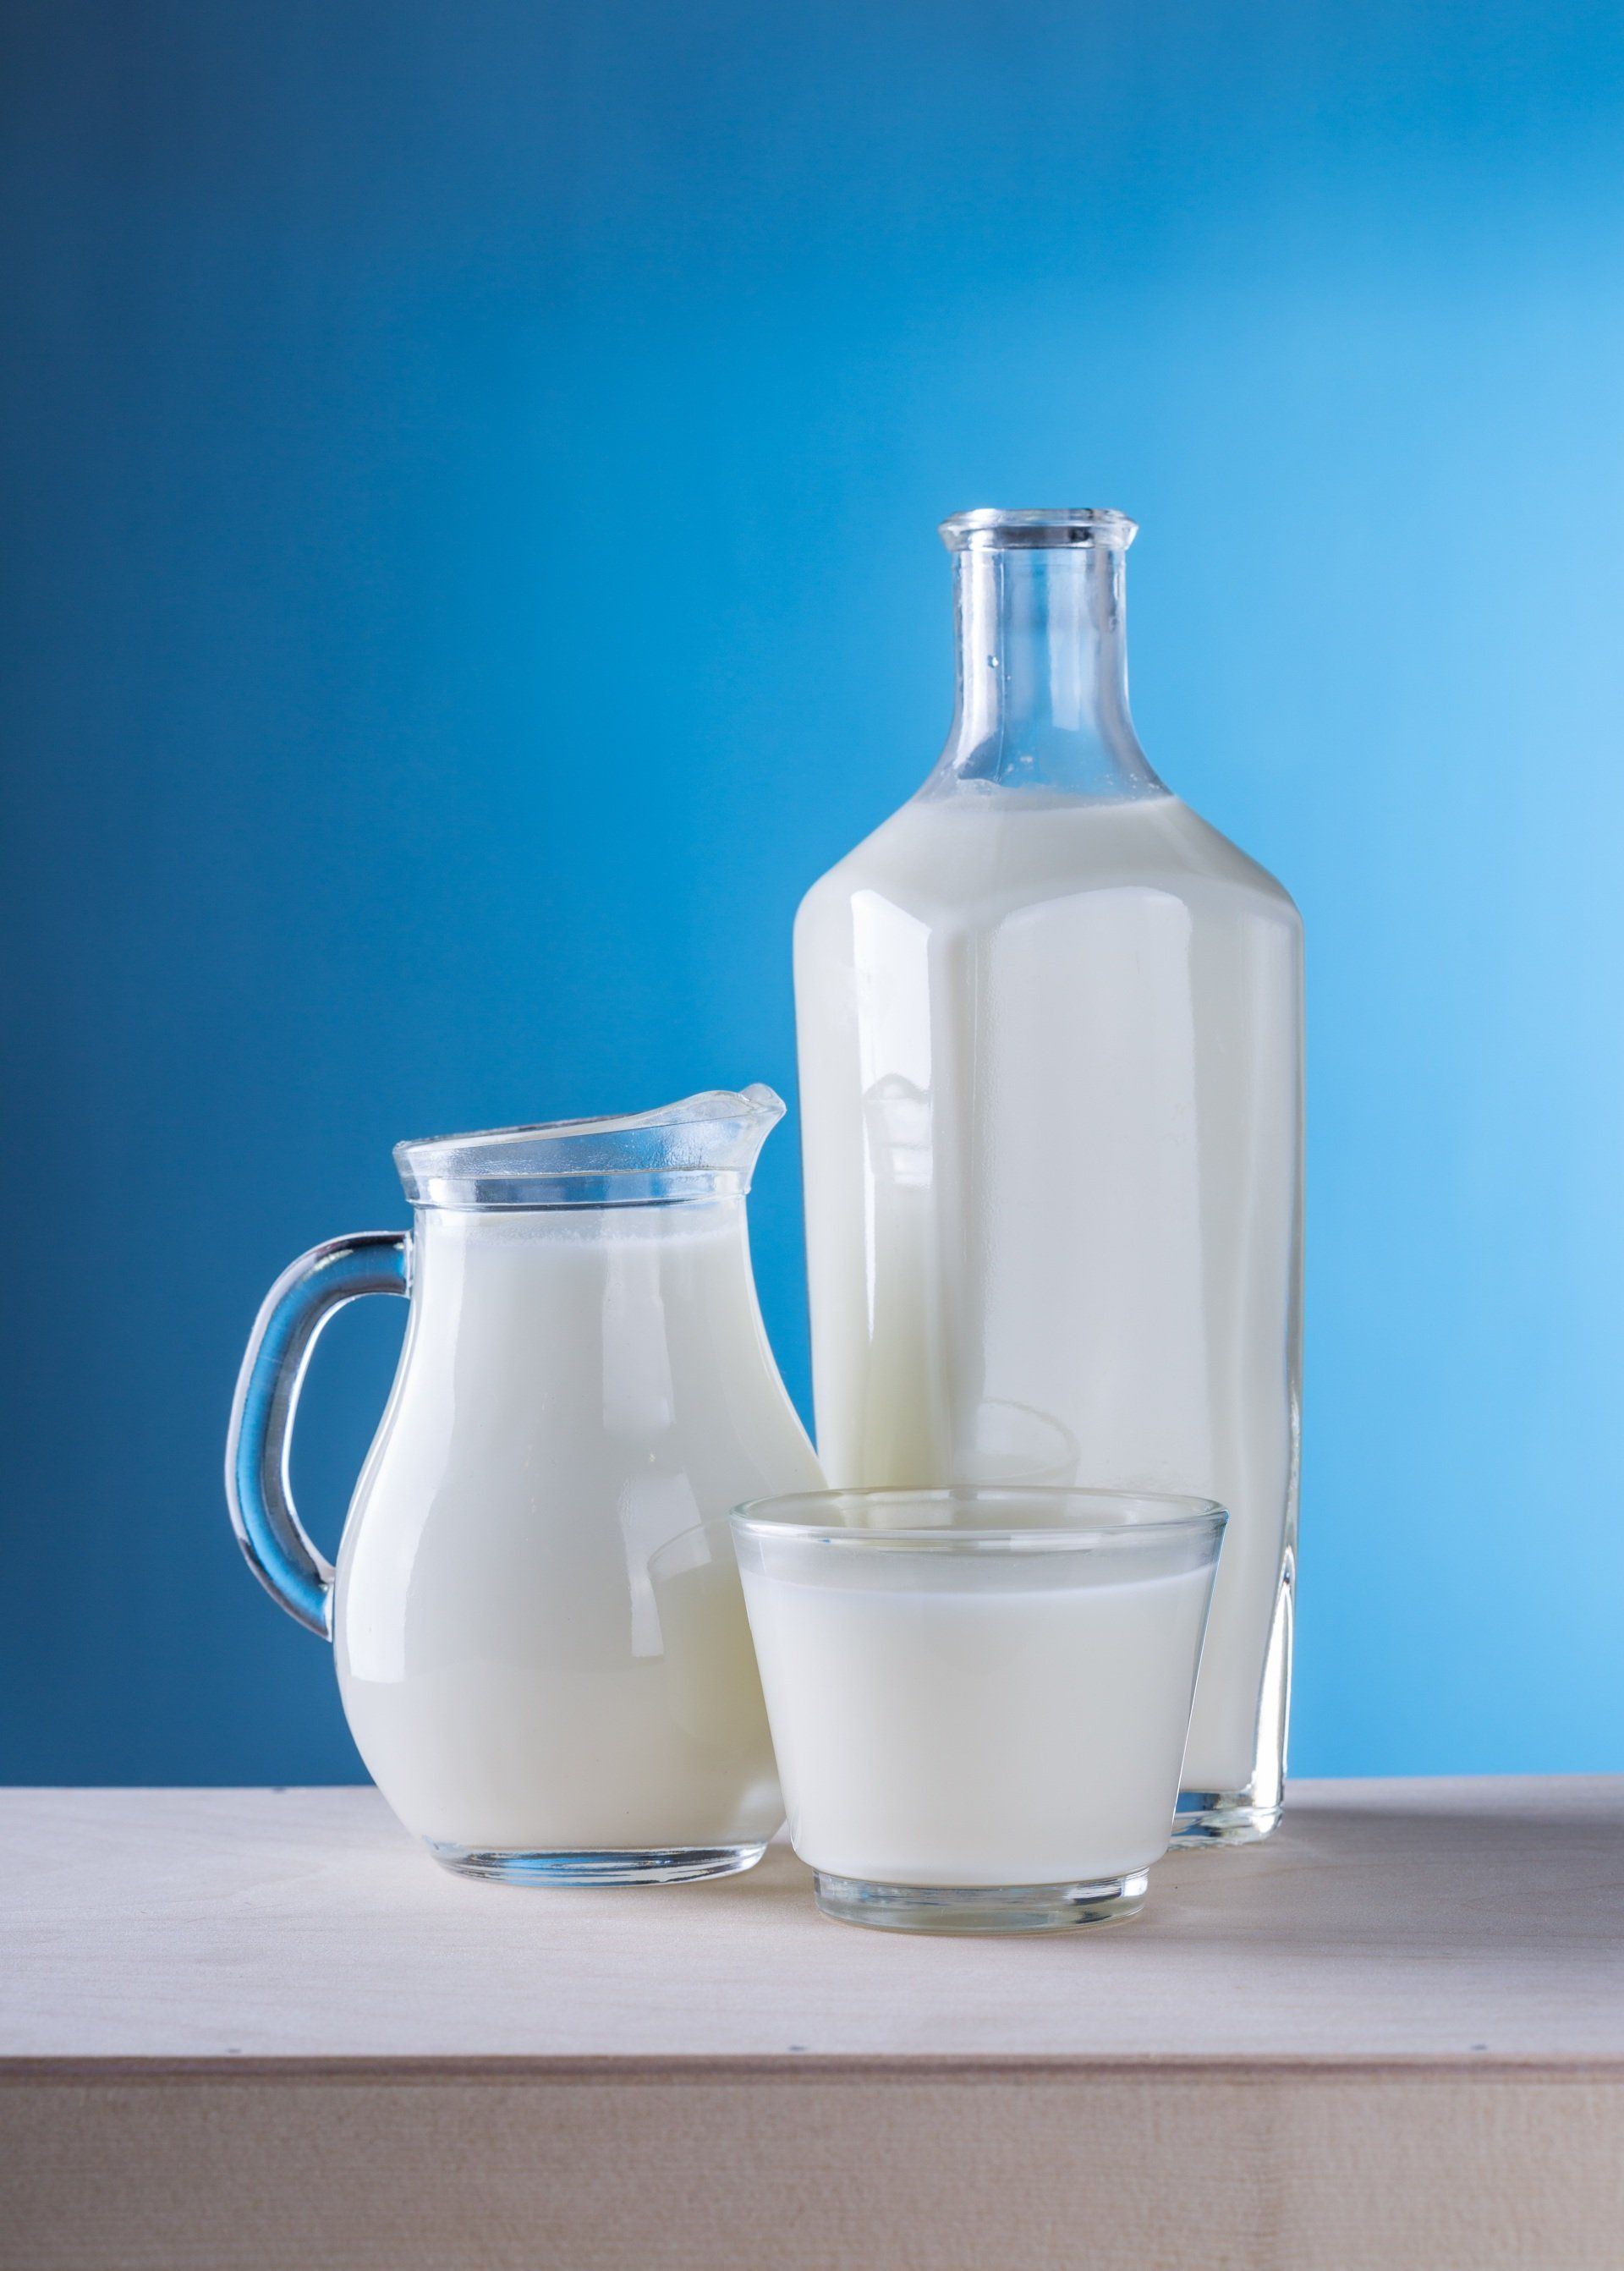 Uma garrafa de leite, uma jarra de leite e um copo de leite sobre uma mesa.